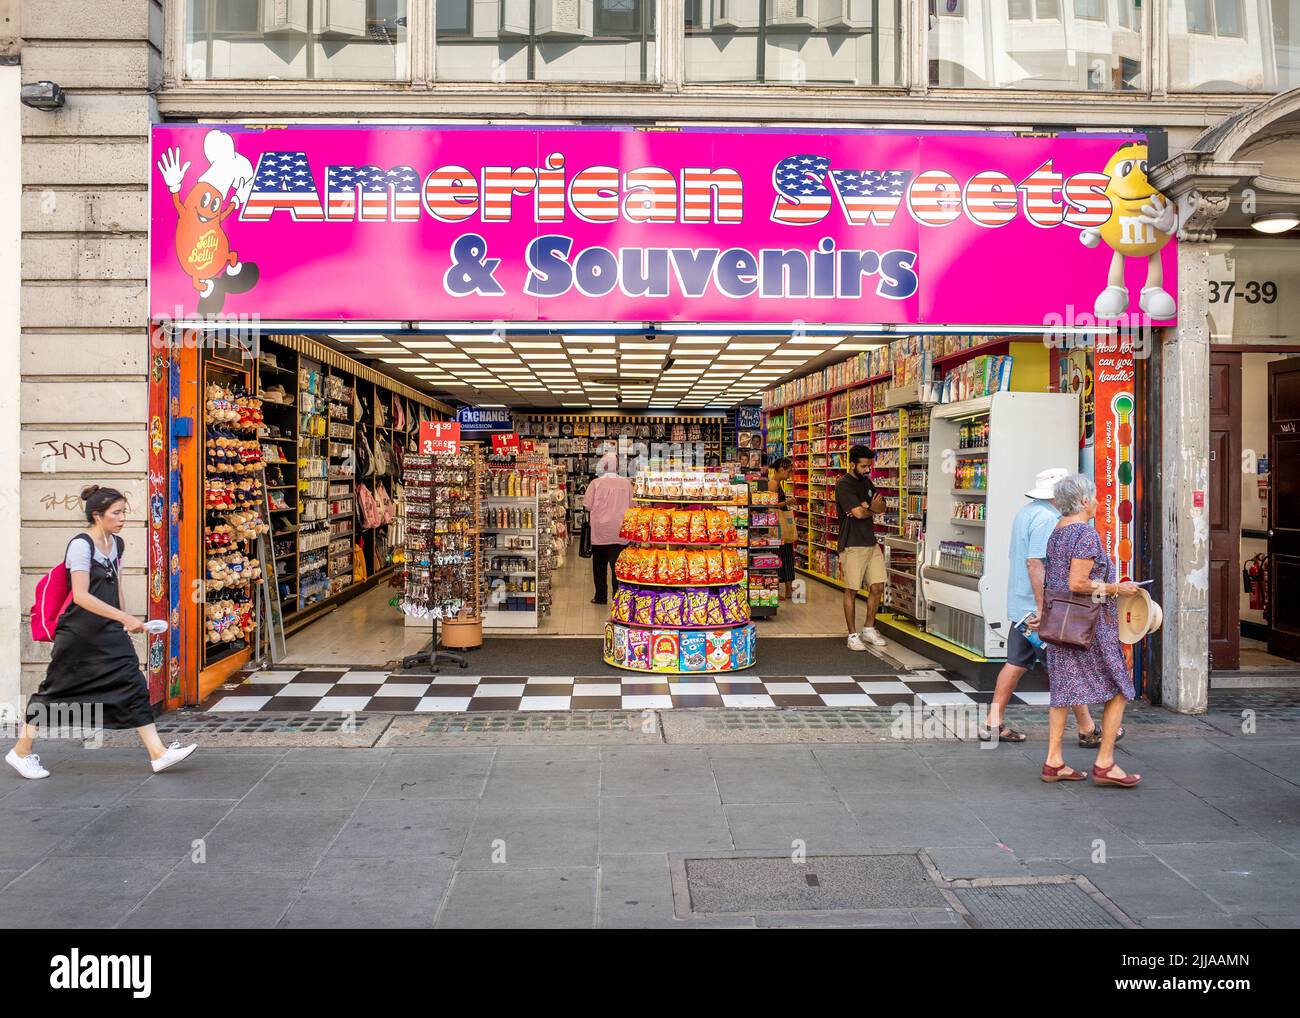 Umstrittener American Sweet Shop in der Oxford Street, der Steuerhinterziehung und Geldwäsche beschuldigt, Central London, England, Großbritannien. Stockfoto